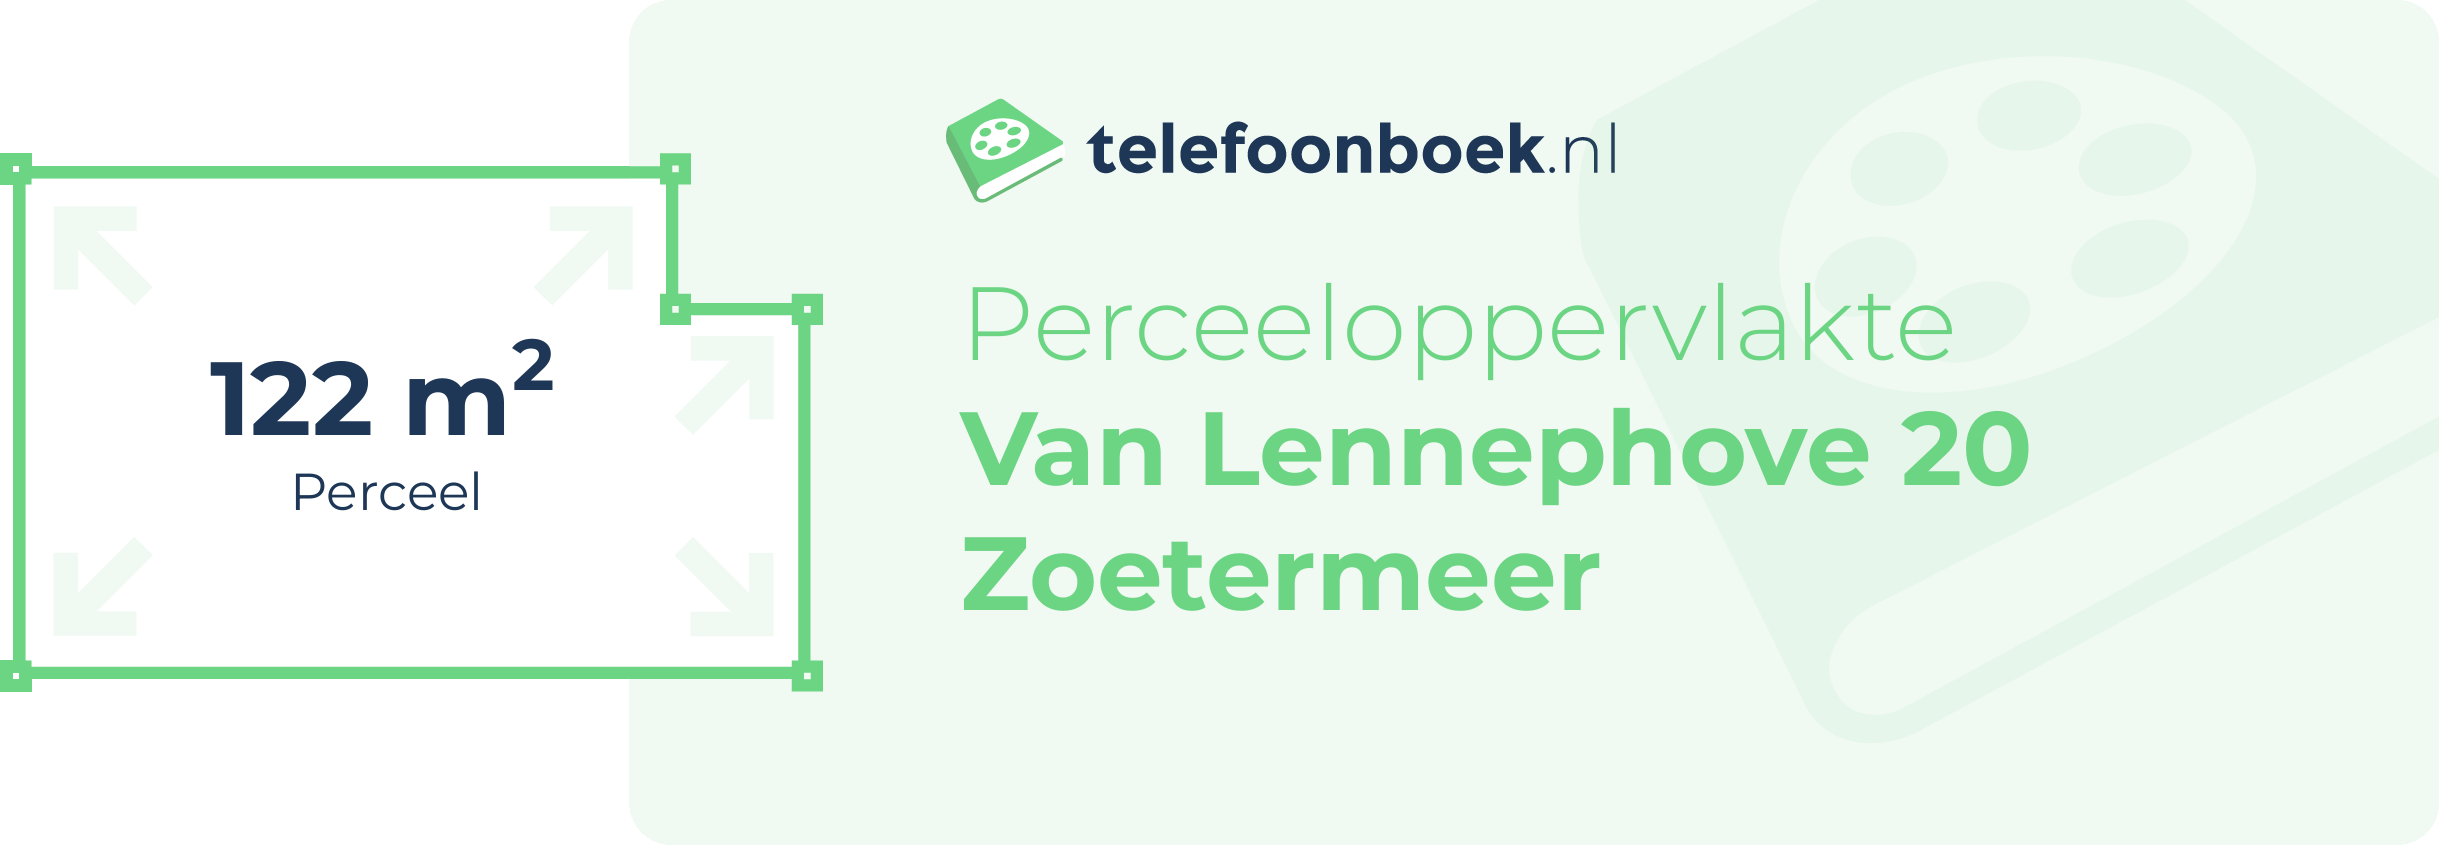 Perceeloppervlakte Van Lennephove 20 Zoetermeer